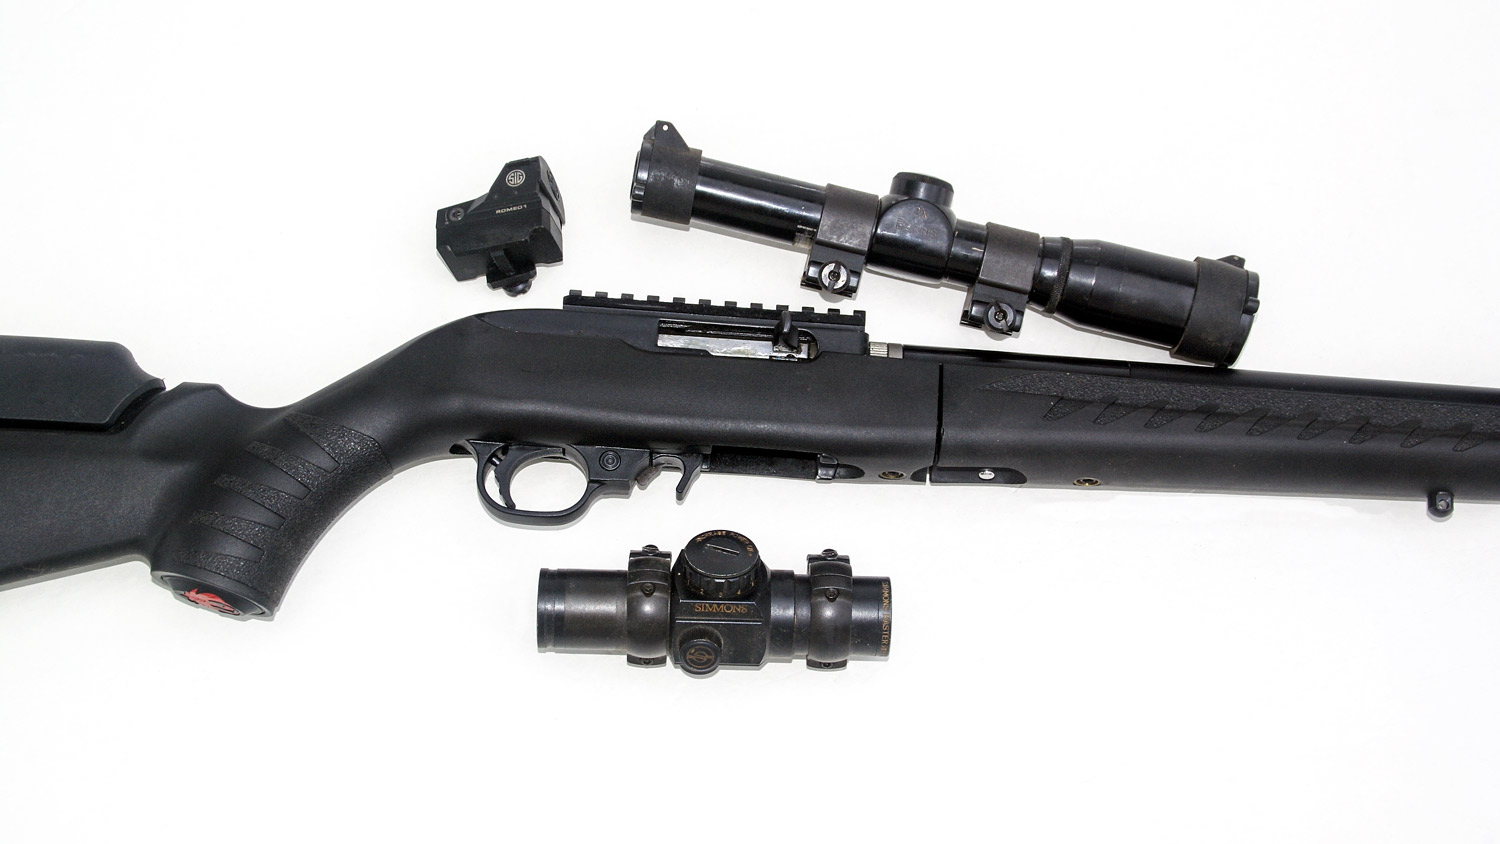 Rimfire rifle optic options